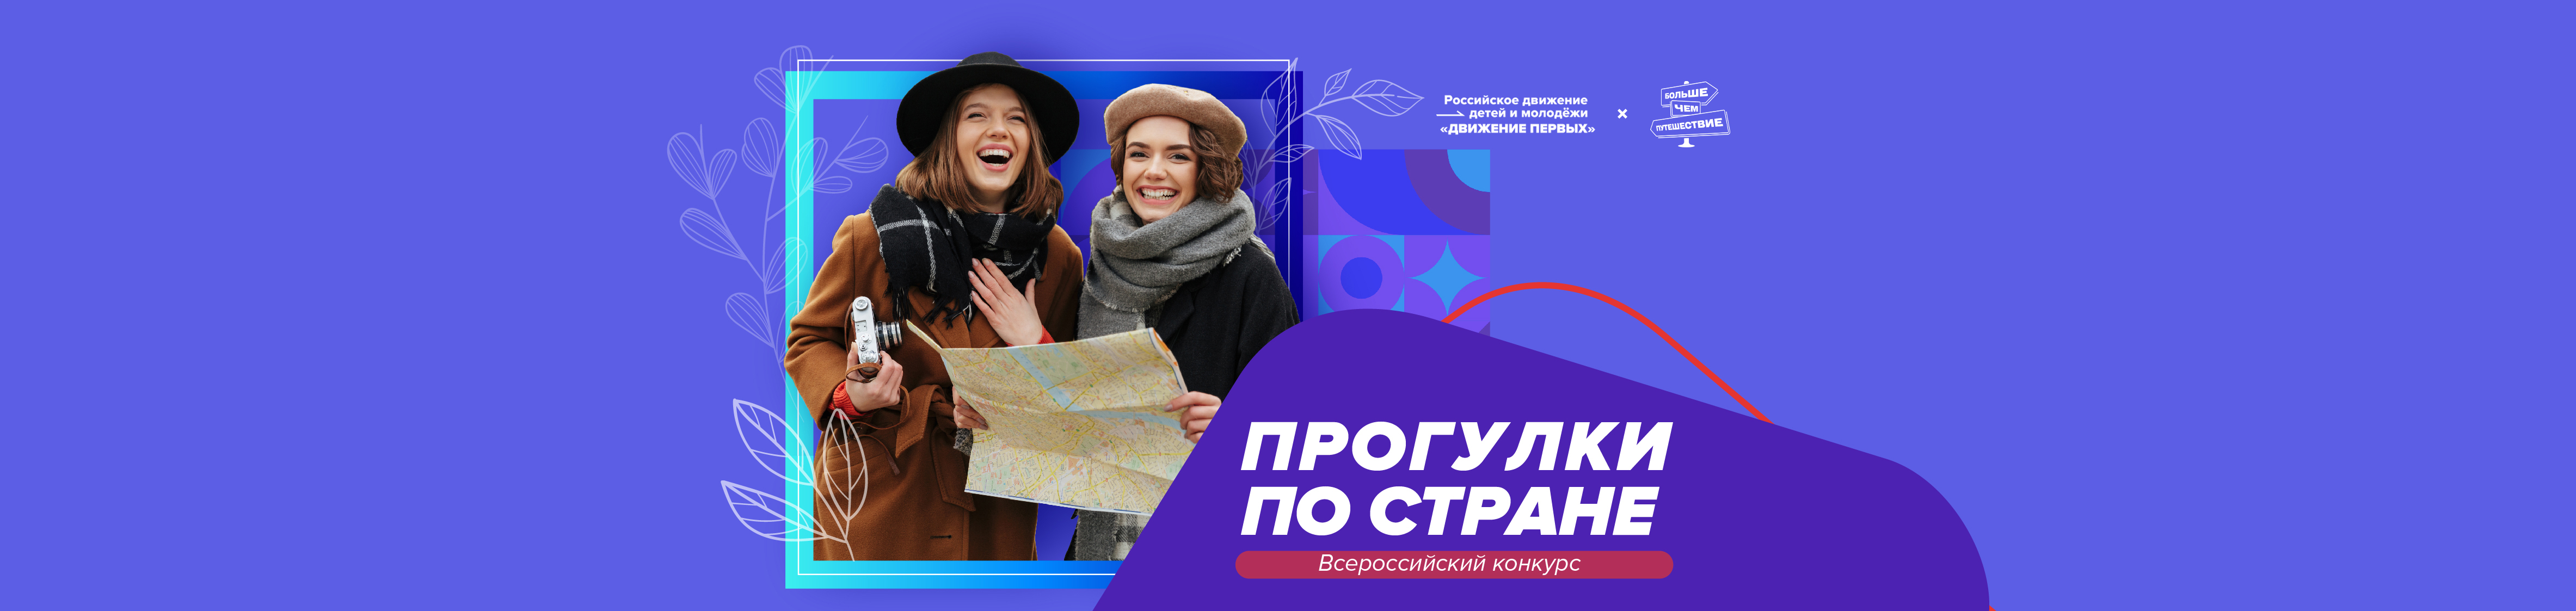 Всероссийский конкурс «Прогулки по стране»